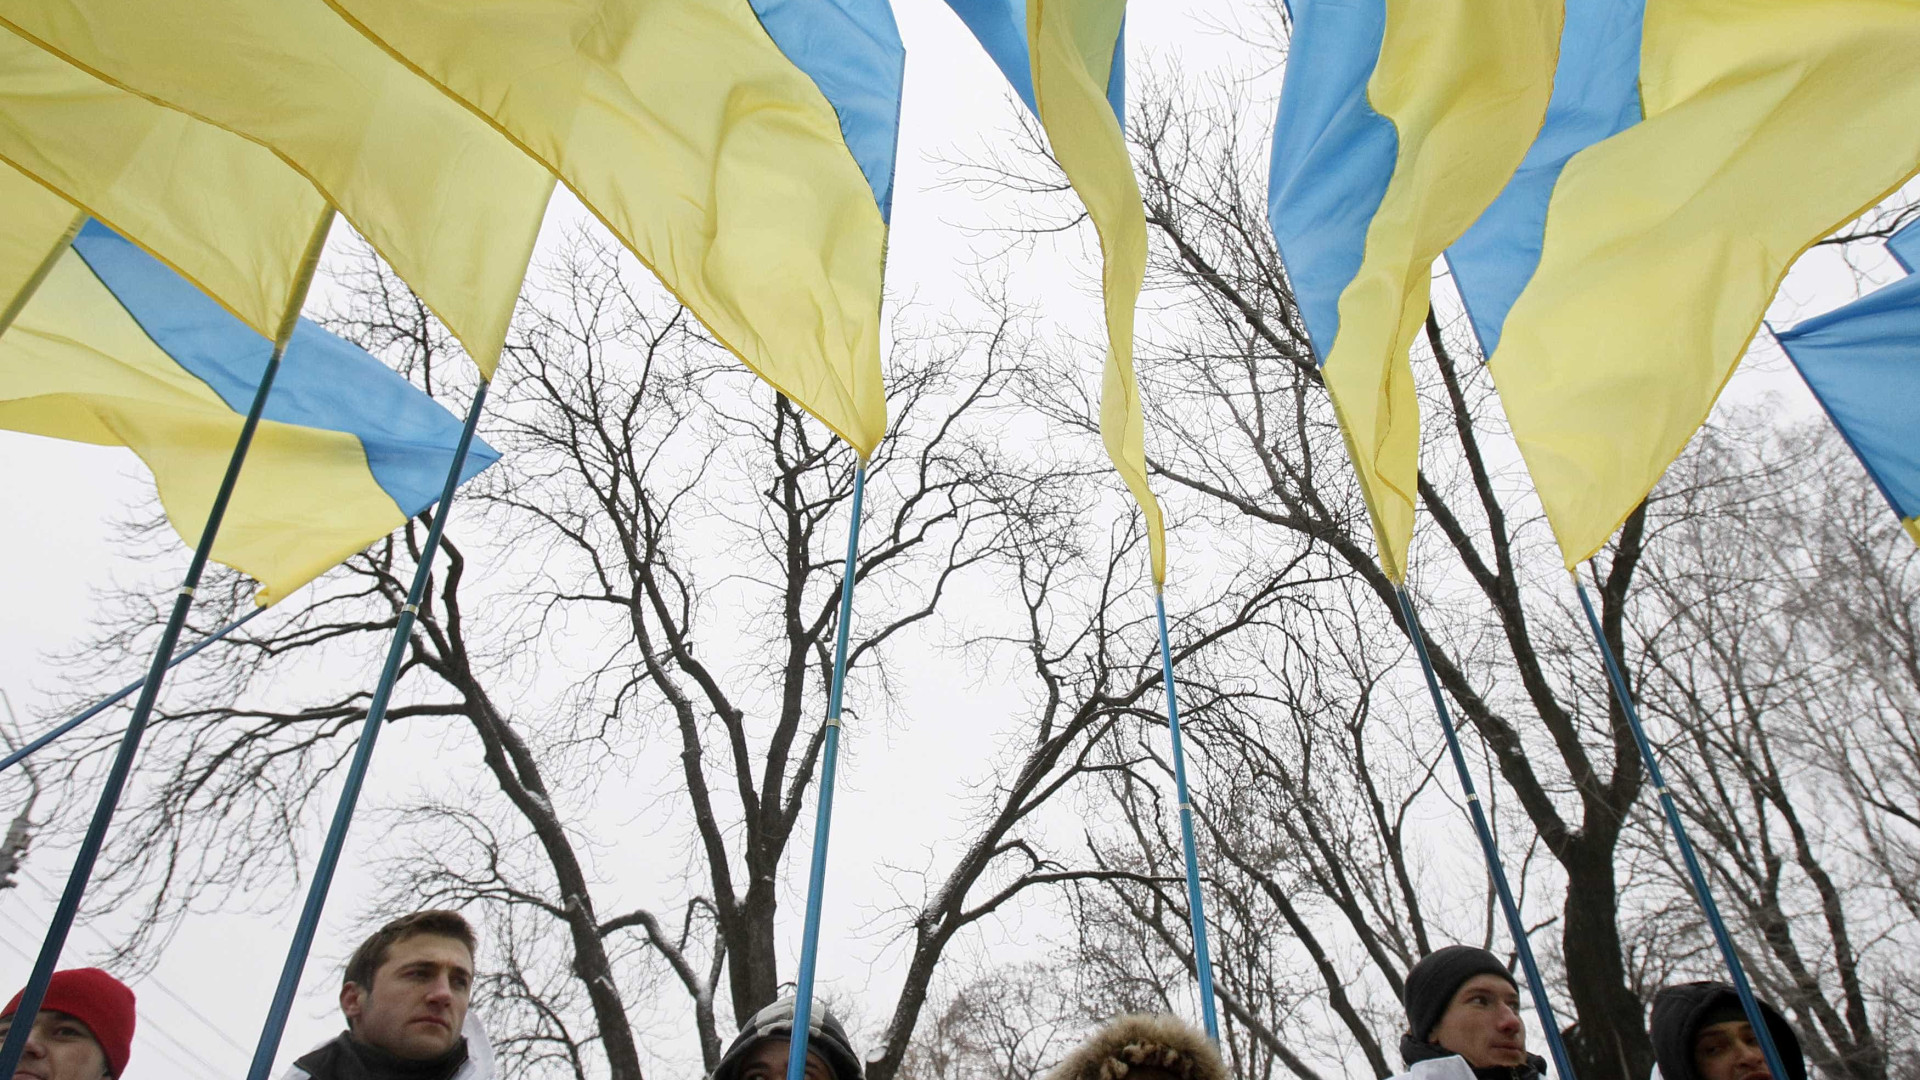 Membros do alto escalão da Ucrânia deixam cargos em rara mudança